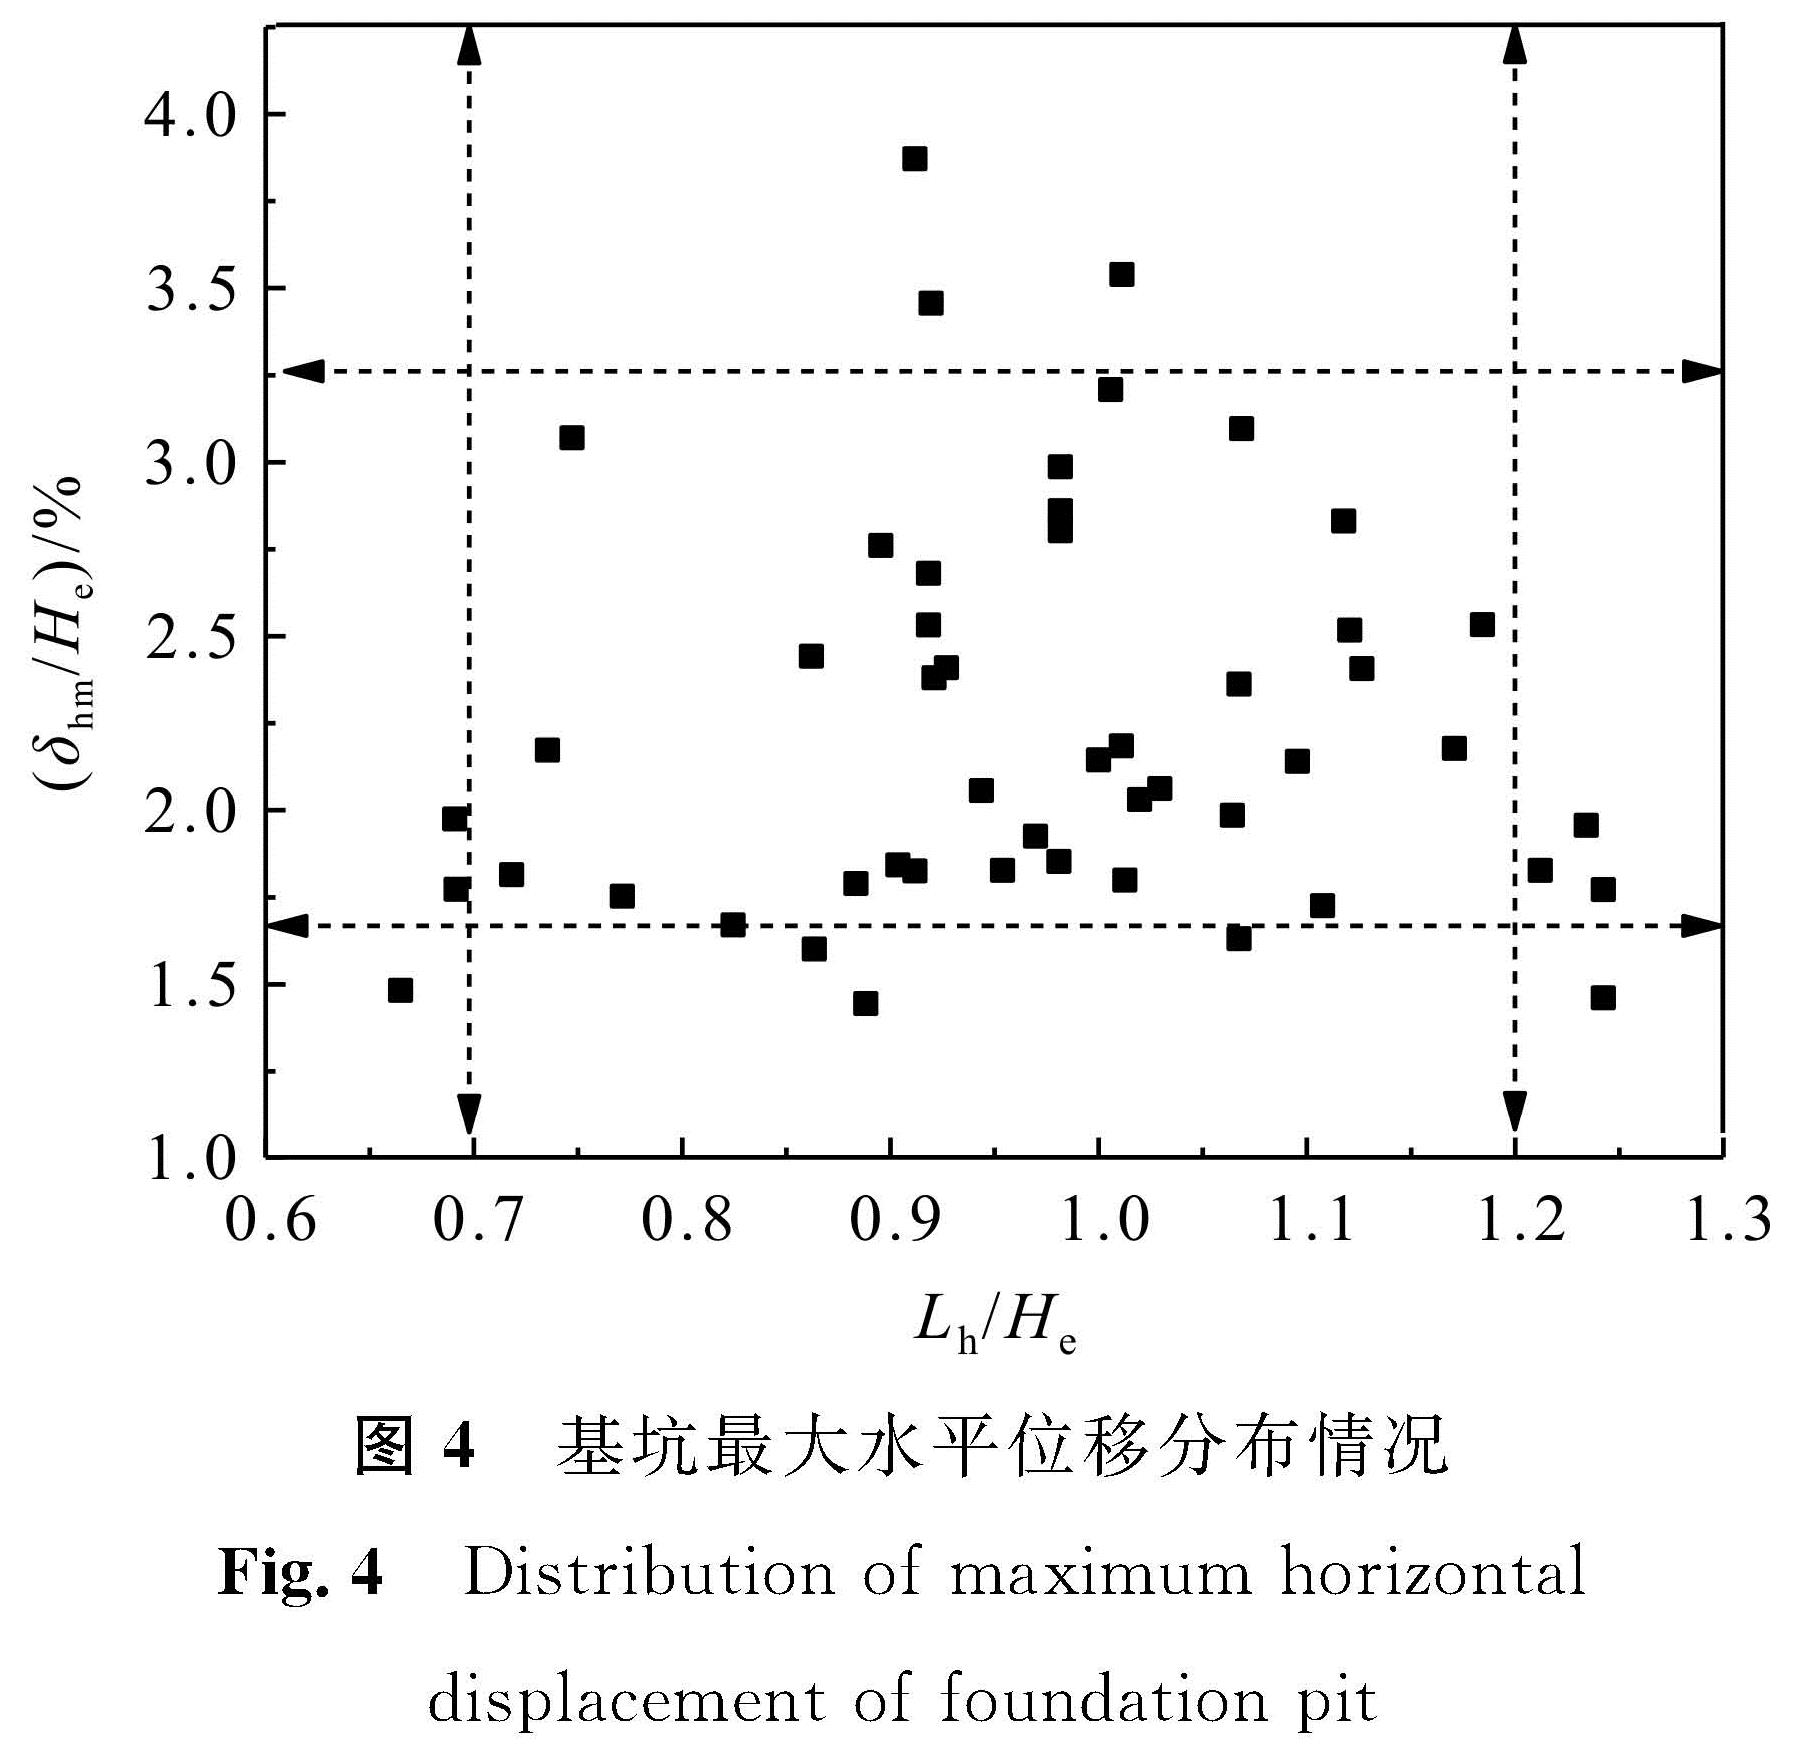 图4 基坑最大水平位移分布情况<br/>Fig.4 Distribution of maximum horizontal displacement of foundation pit